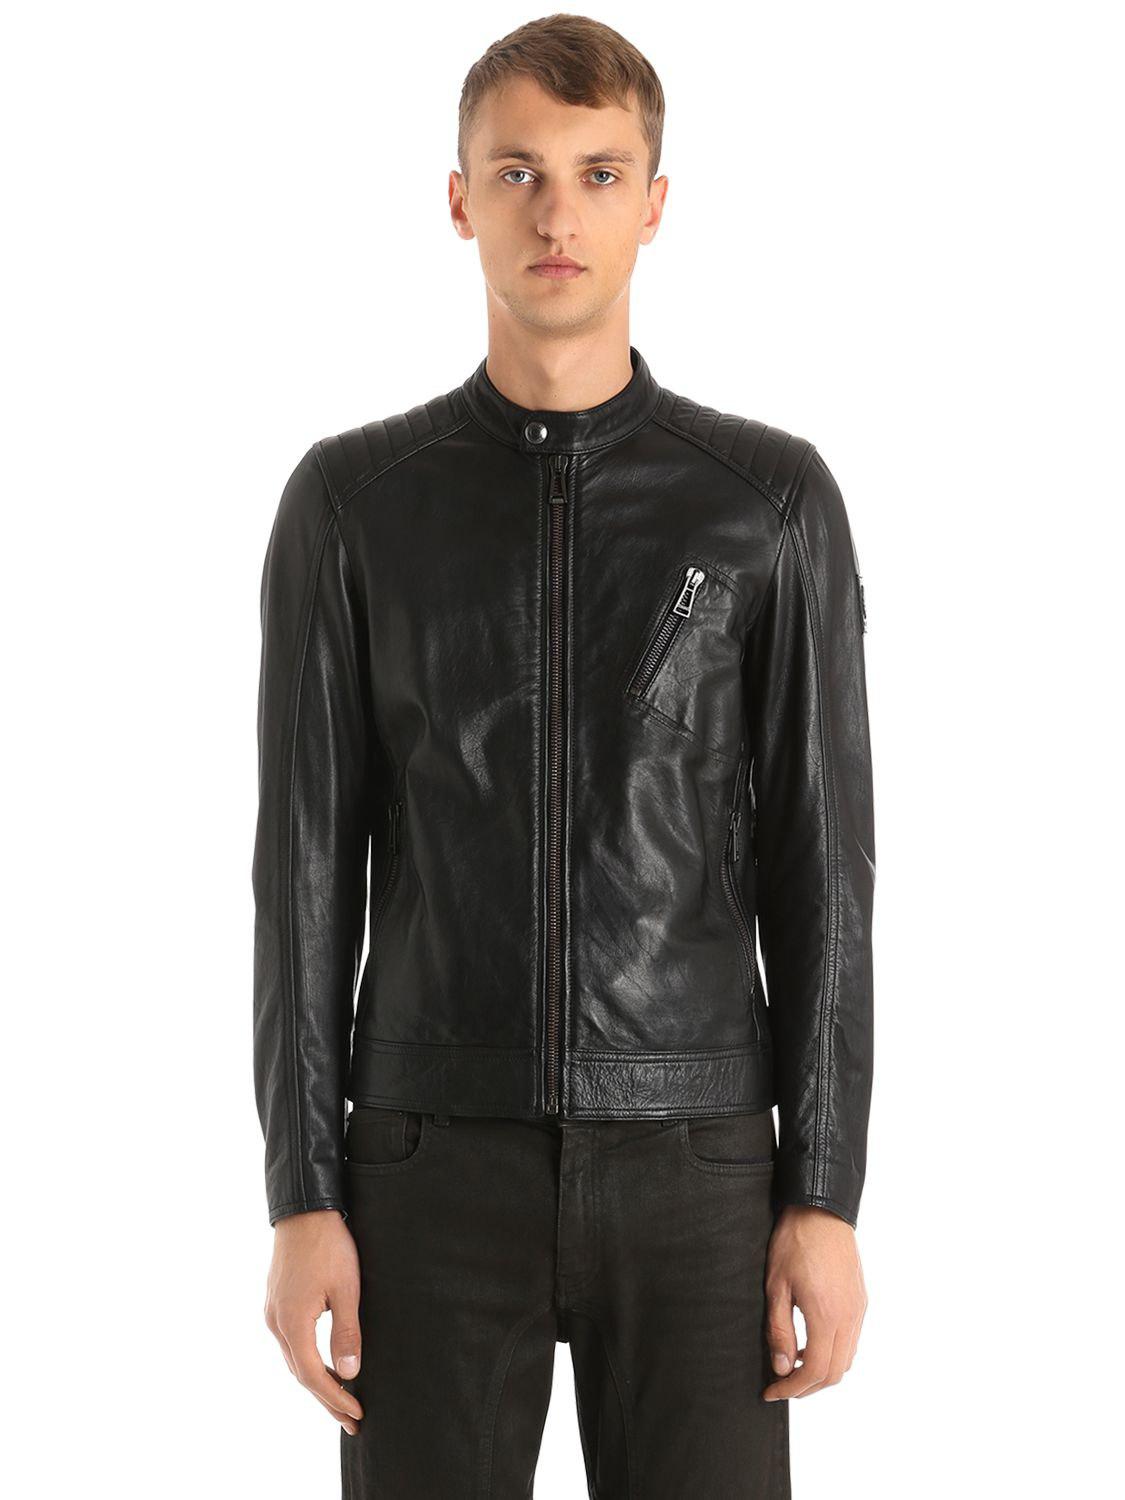 Lyst - Belstaff V Racer Biker Leather Jacket in Black for Men